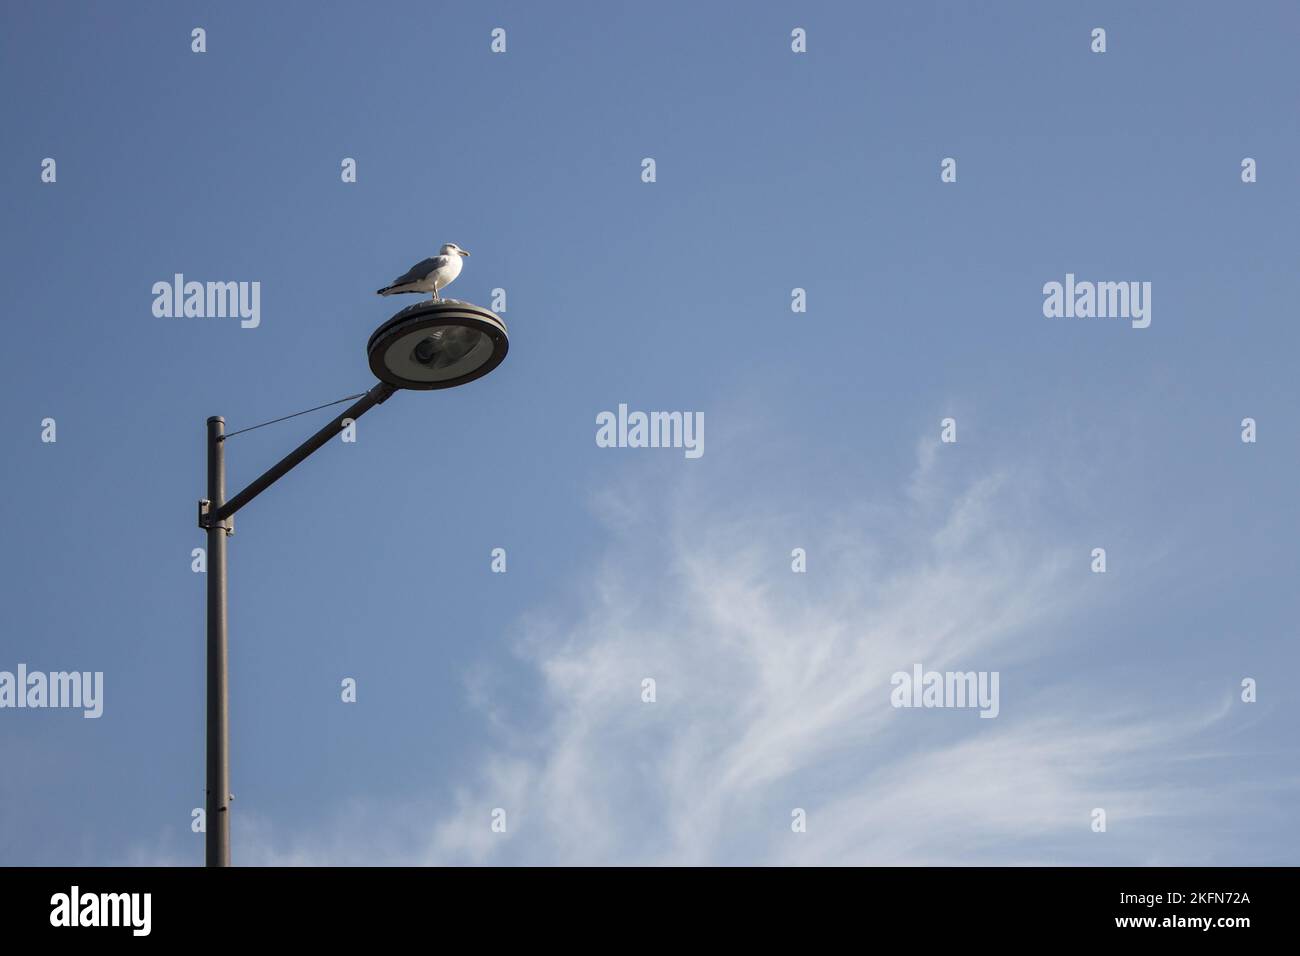 Mouette solitaire assise à la lanterne de rue sur fond bleu ciel. Concept de solitude. Feu d'oiseau sauvage sur rue. Concept d'électricité. Banque D'Images